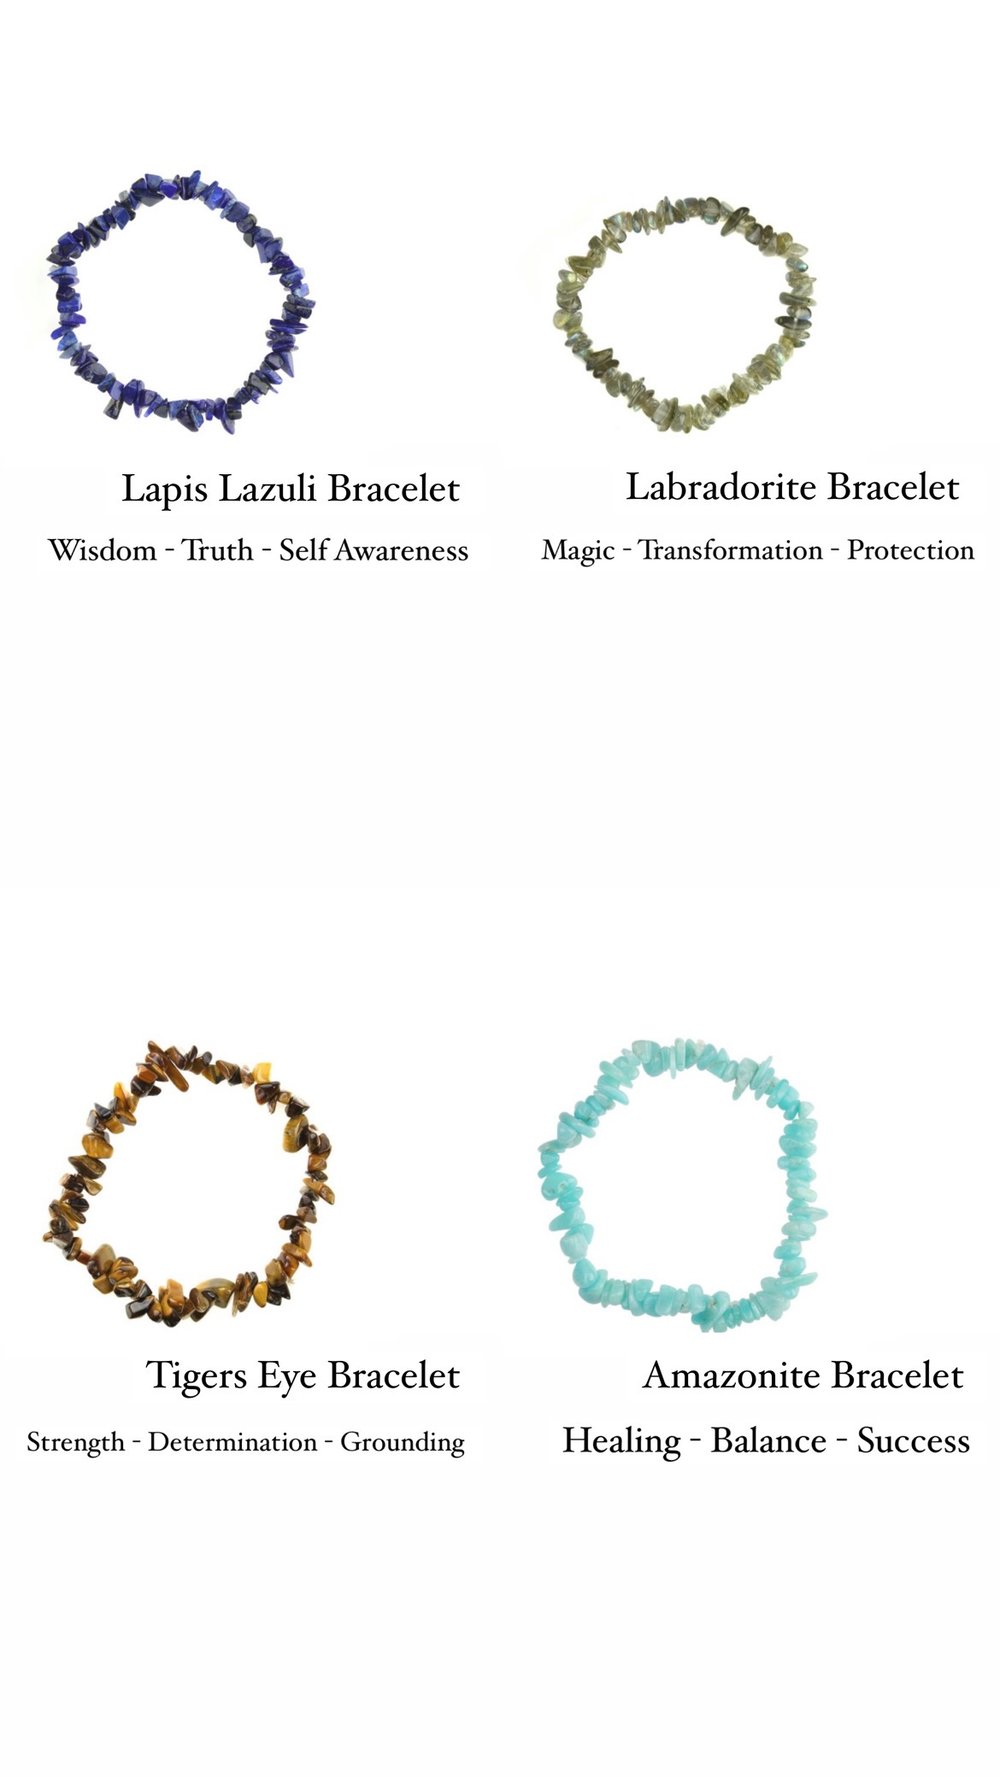 Image of Crystal Bracelet 